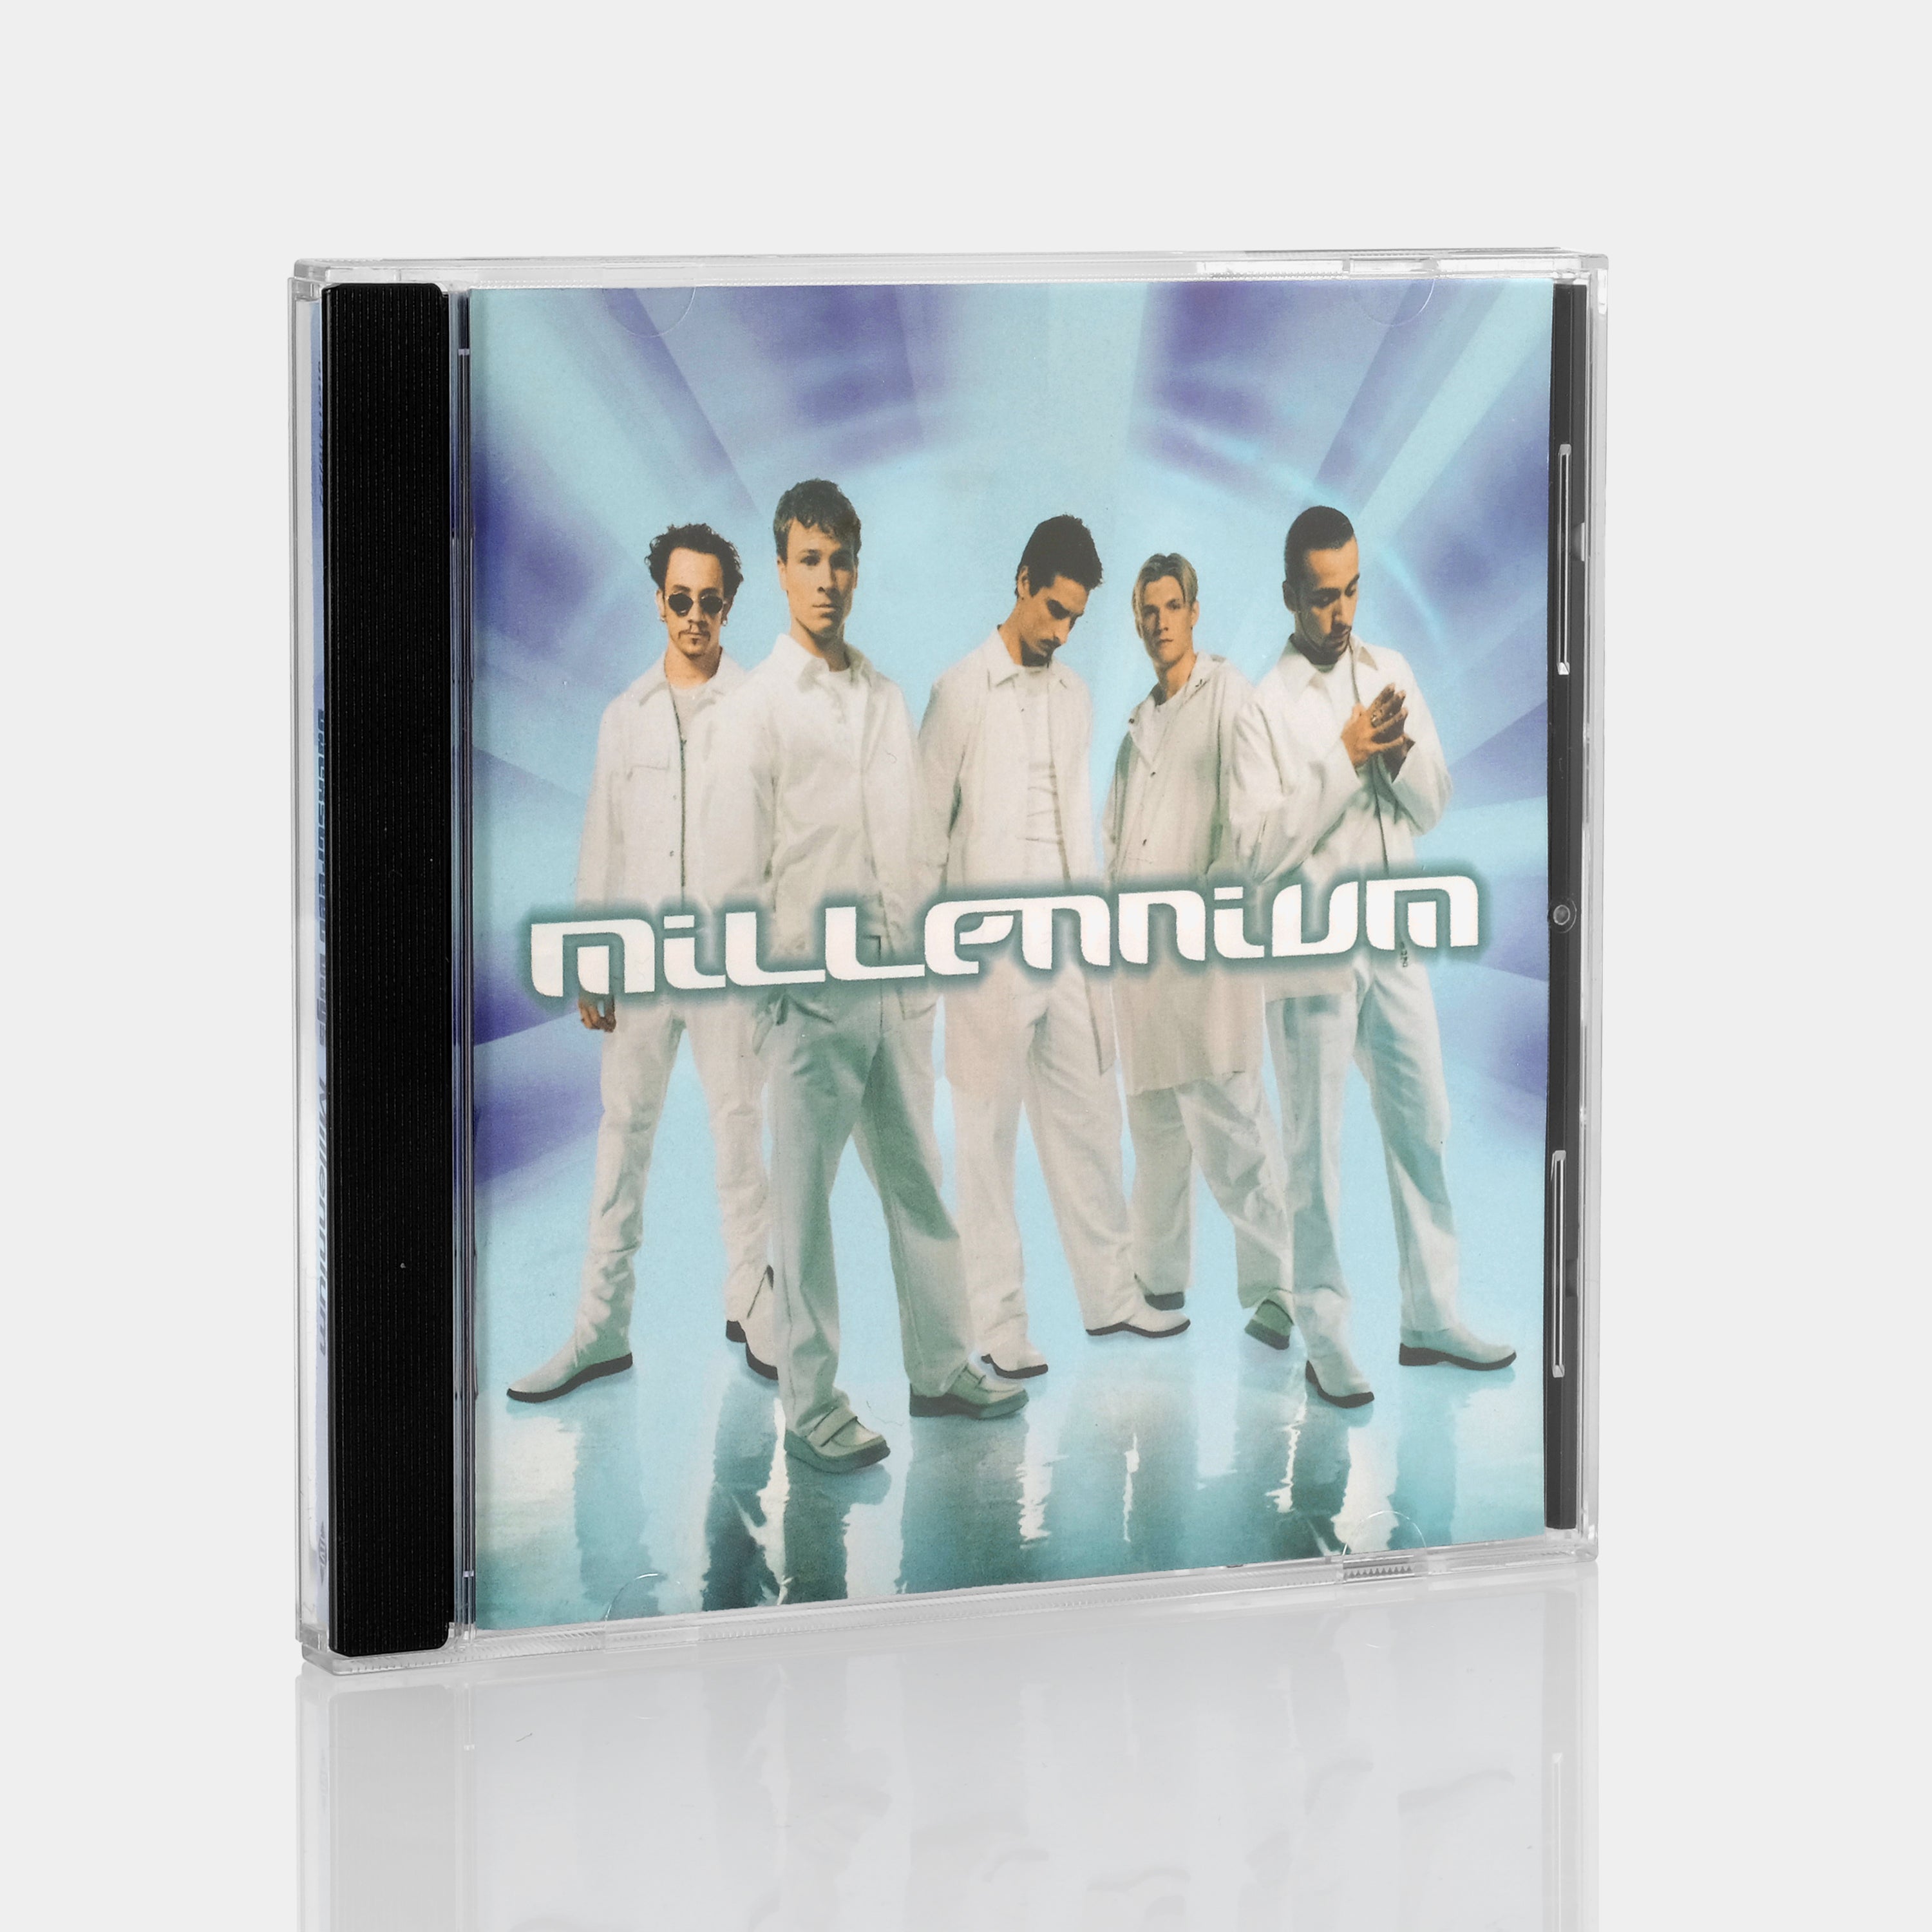 Backstreet Boys - Millennium CD